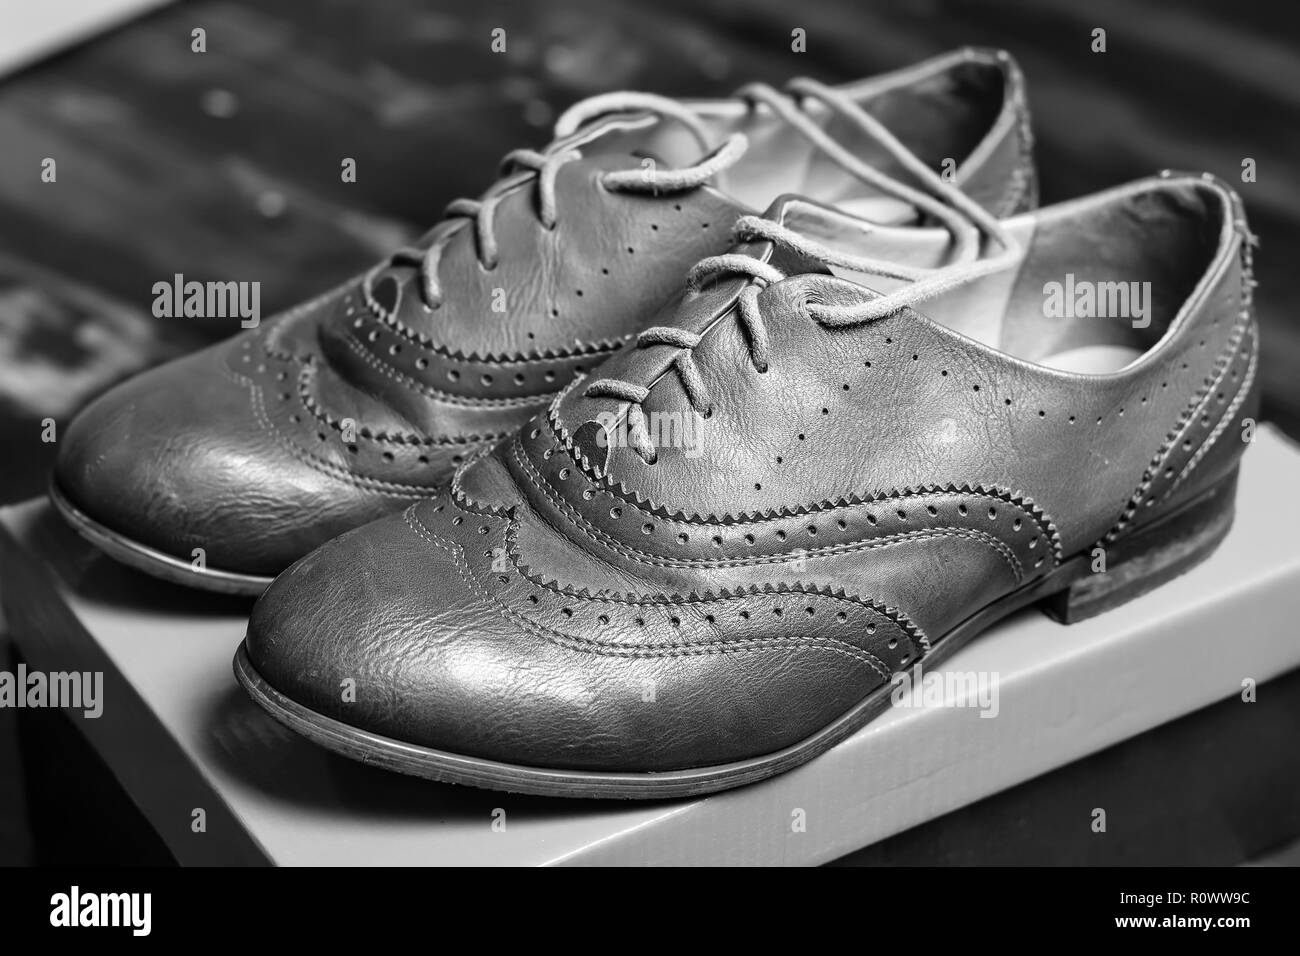 Hipster shoes immagini e fotografie stock ad alta risoluzione - Alamy